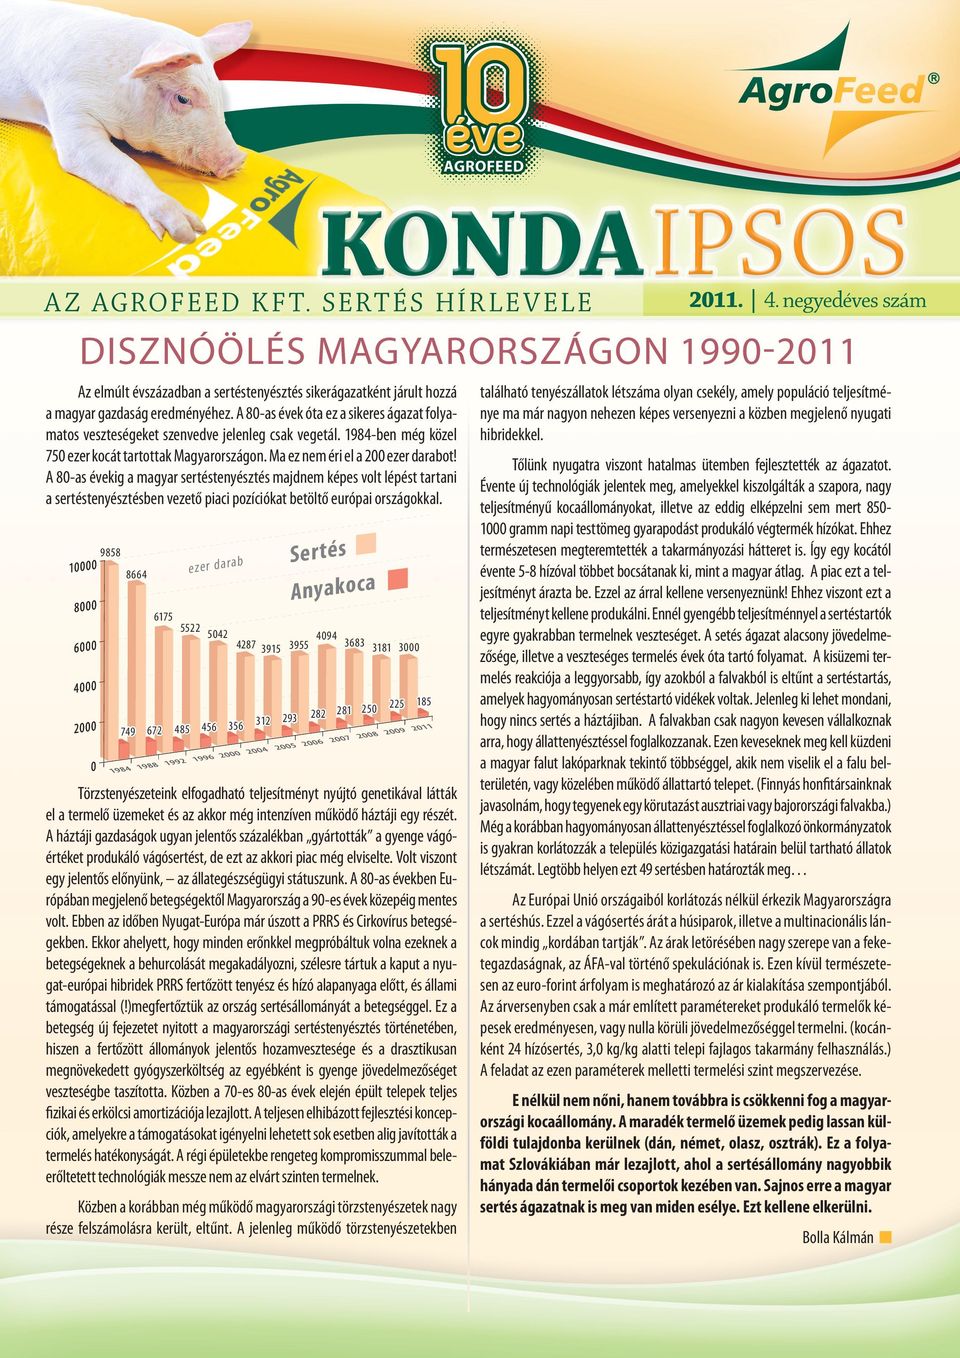 A 80-as évek óta ez a sikeres ágazat folyamatos veszteségeket szenvedve jelenleg csak vegetál. 1984-ben még közel 750 ezer kocát tartottak Magyarországon. Ma ez nem éri el a 200 ezer darabot!